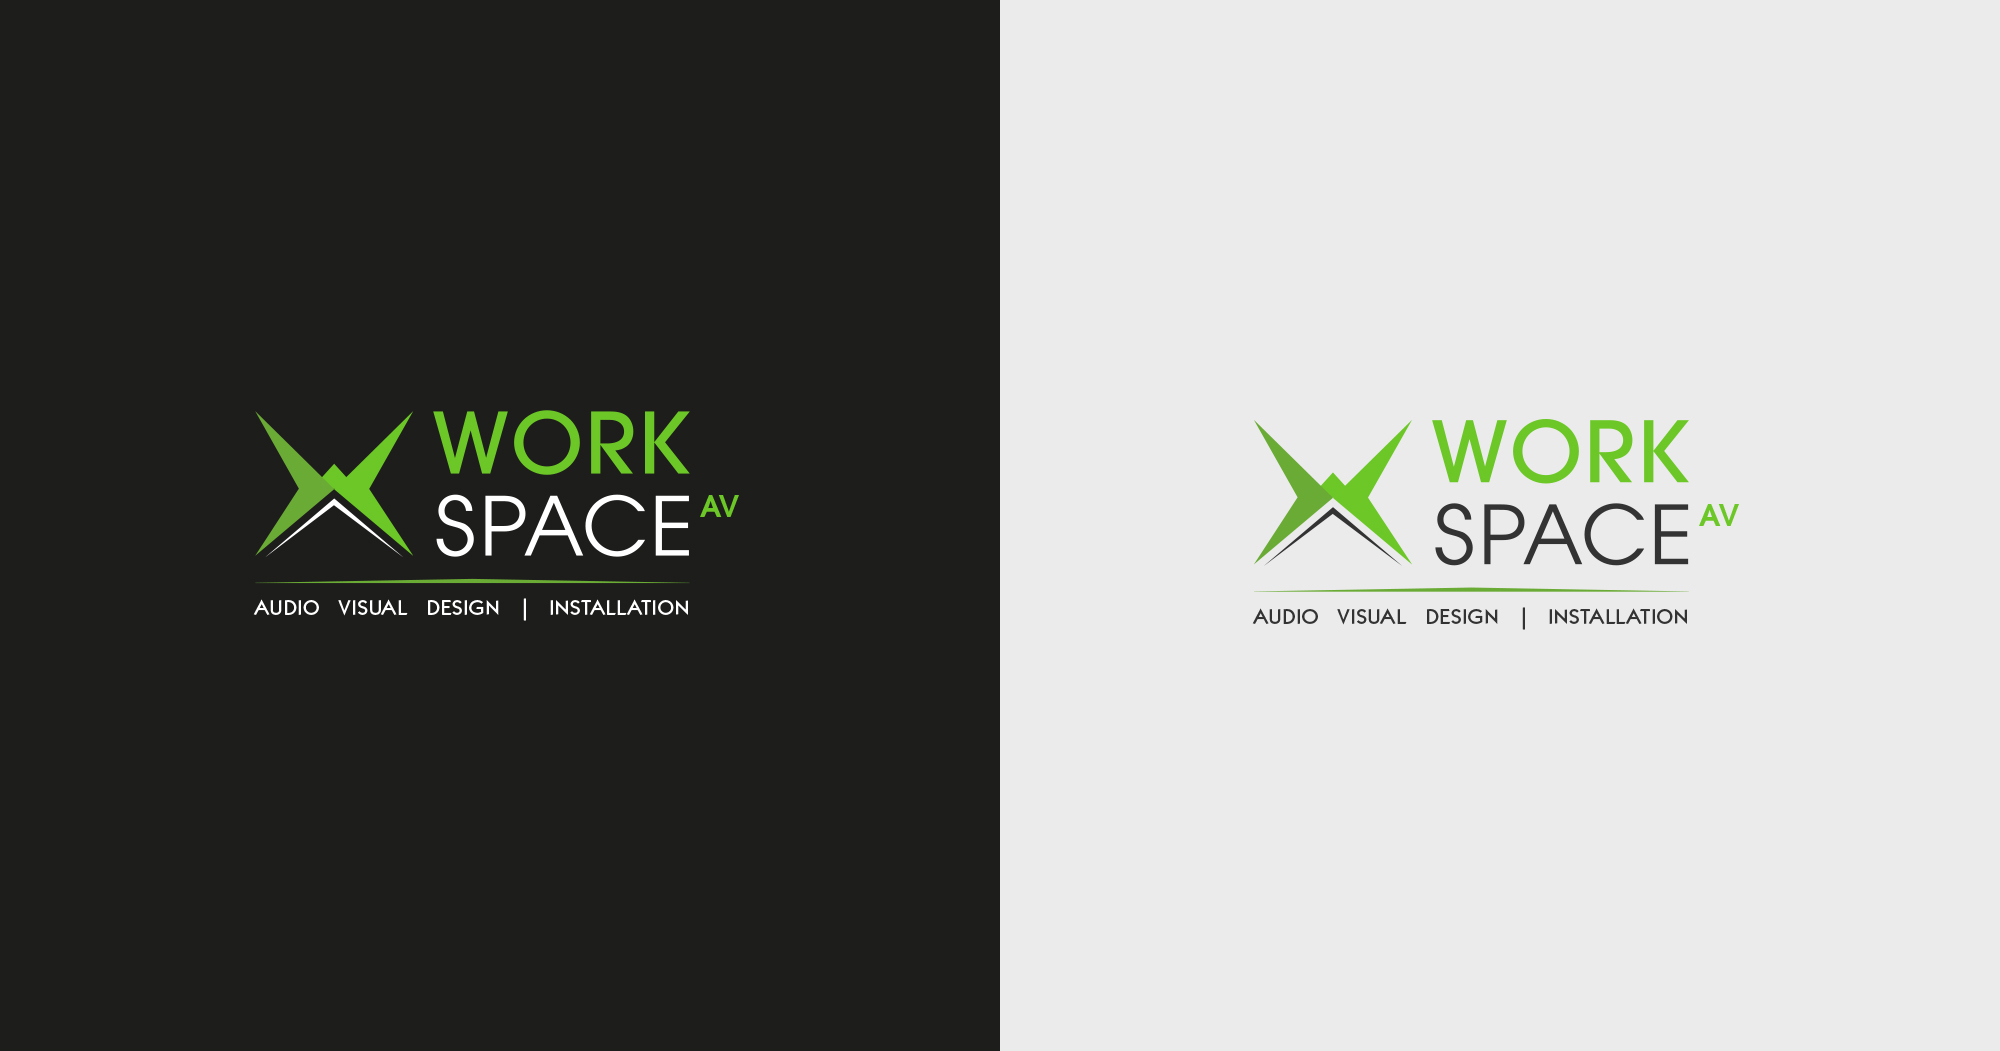 Workspace-Slide-4-v2